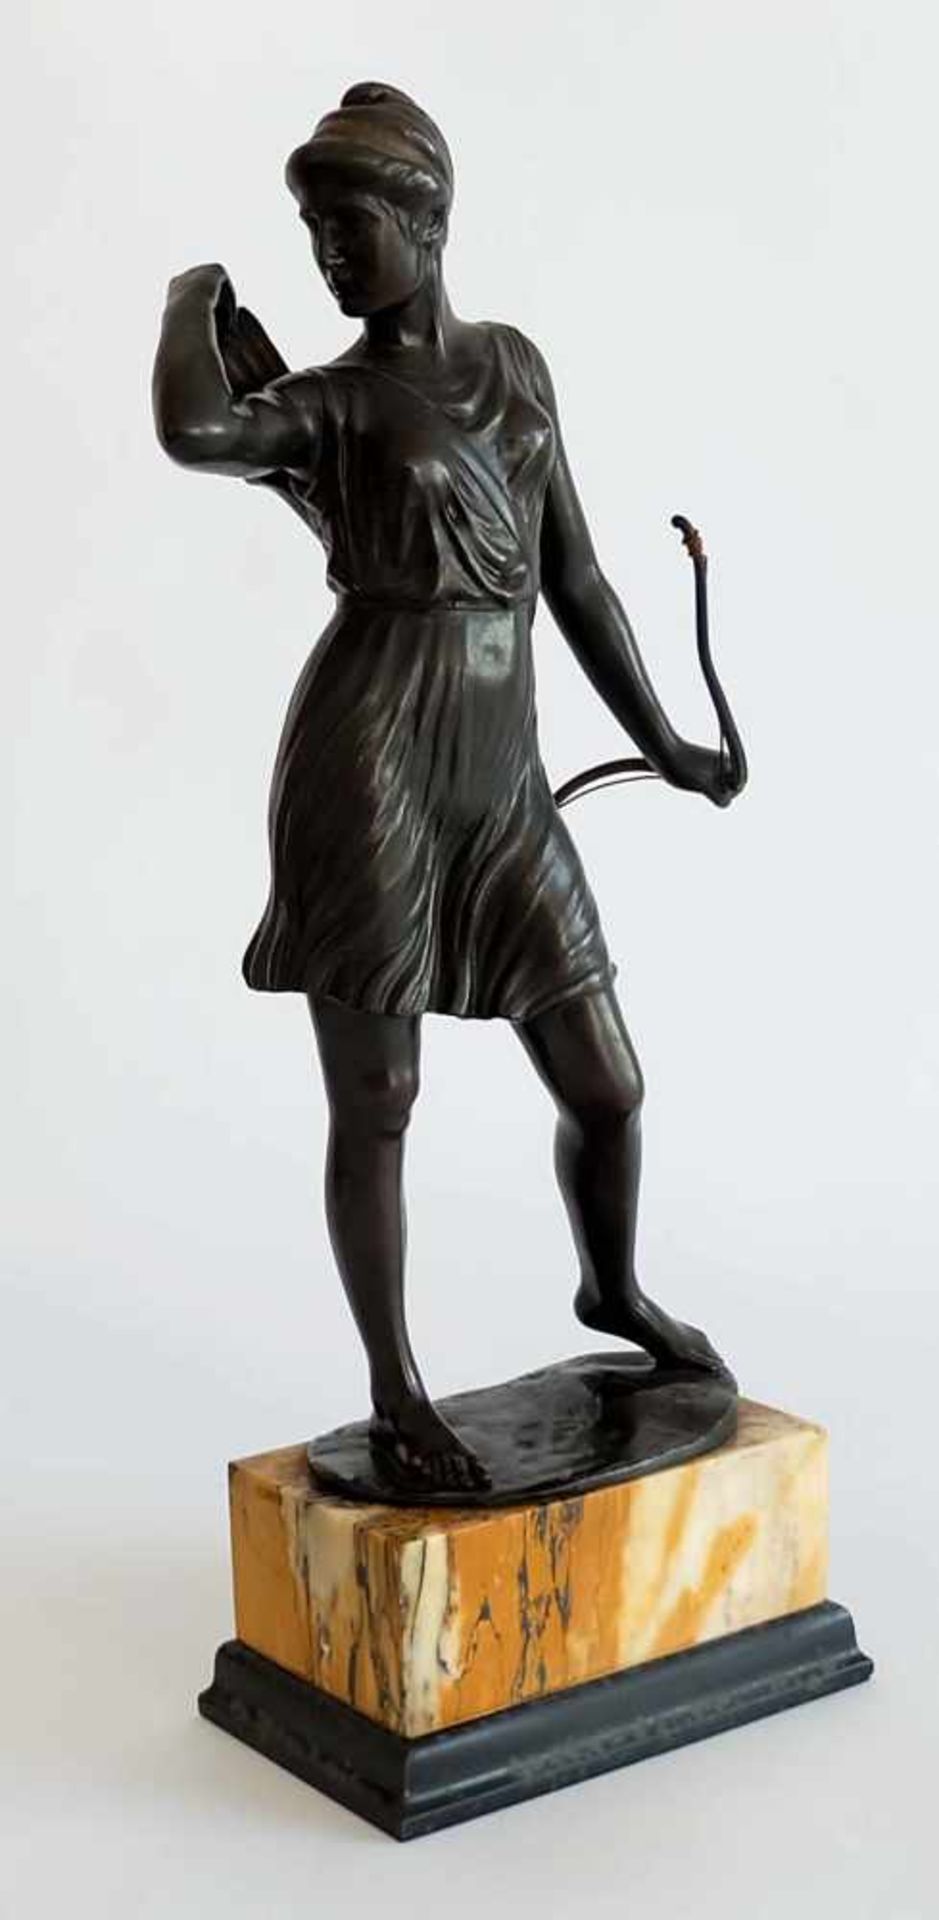 LIEBMANN, Hans Harry (*1876 Berlin +1941), Statue, Bronze, dunkel patiniert, Diana mit Bogen (